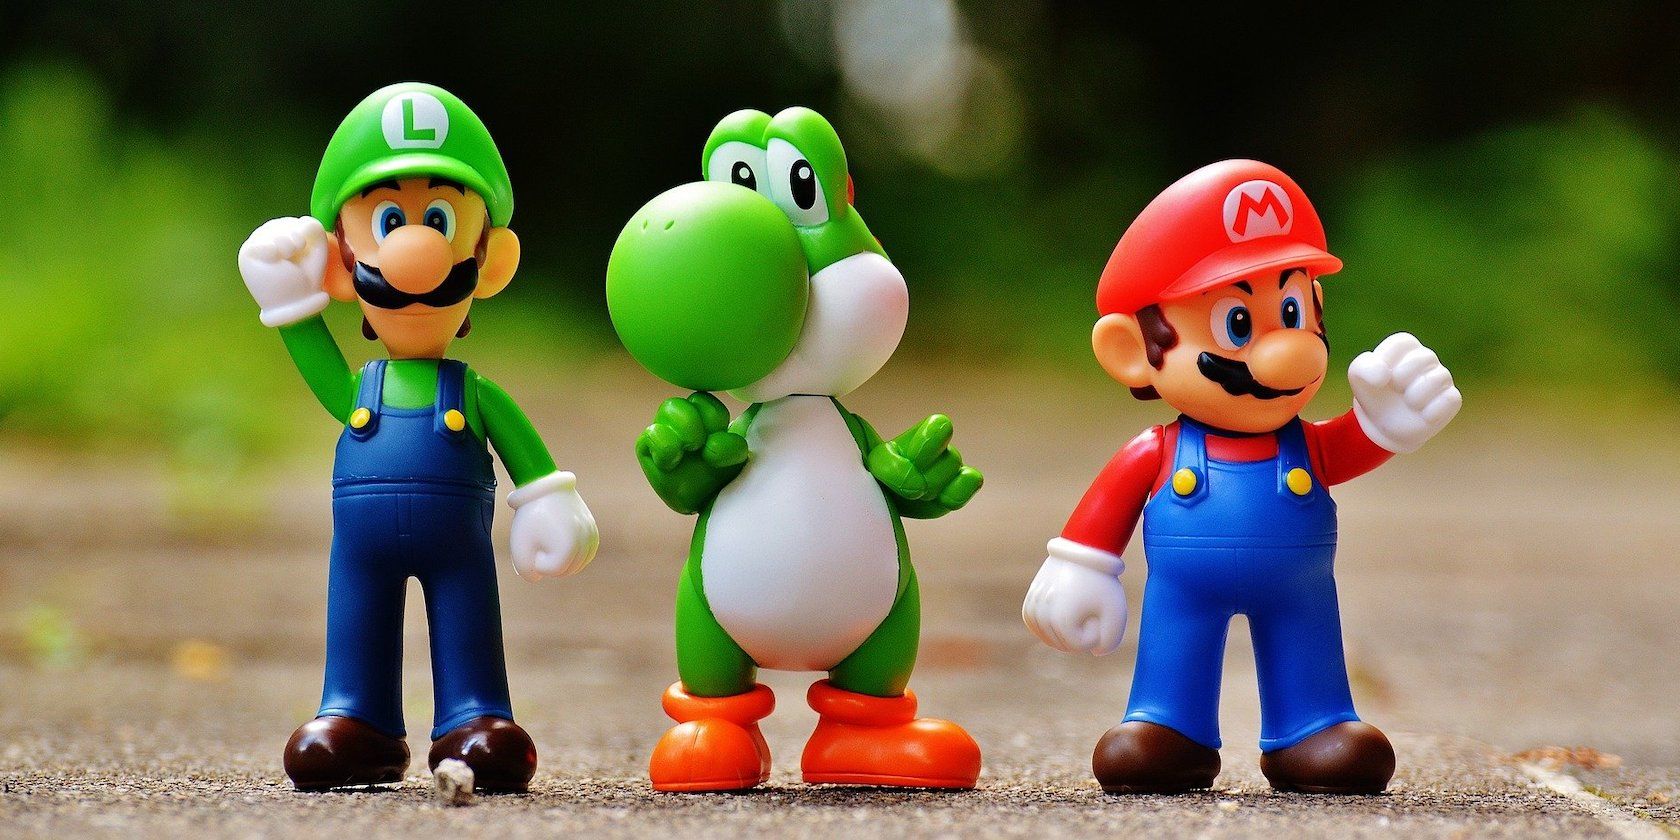 Luigi Yoshi and Mario